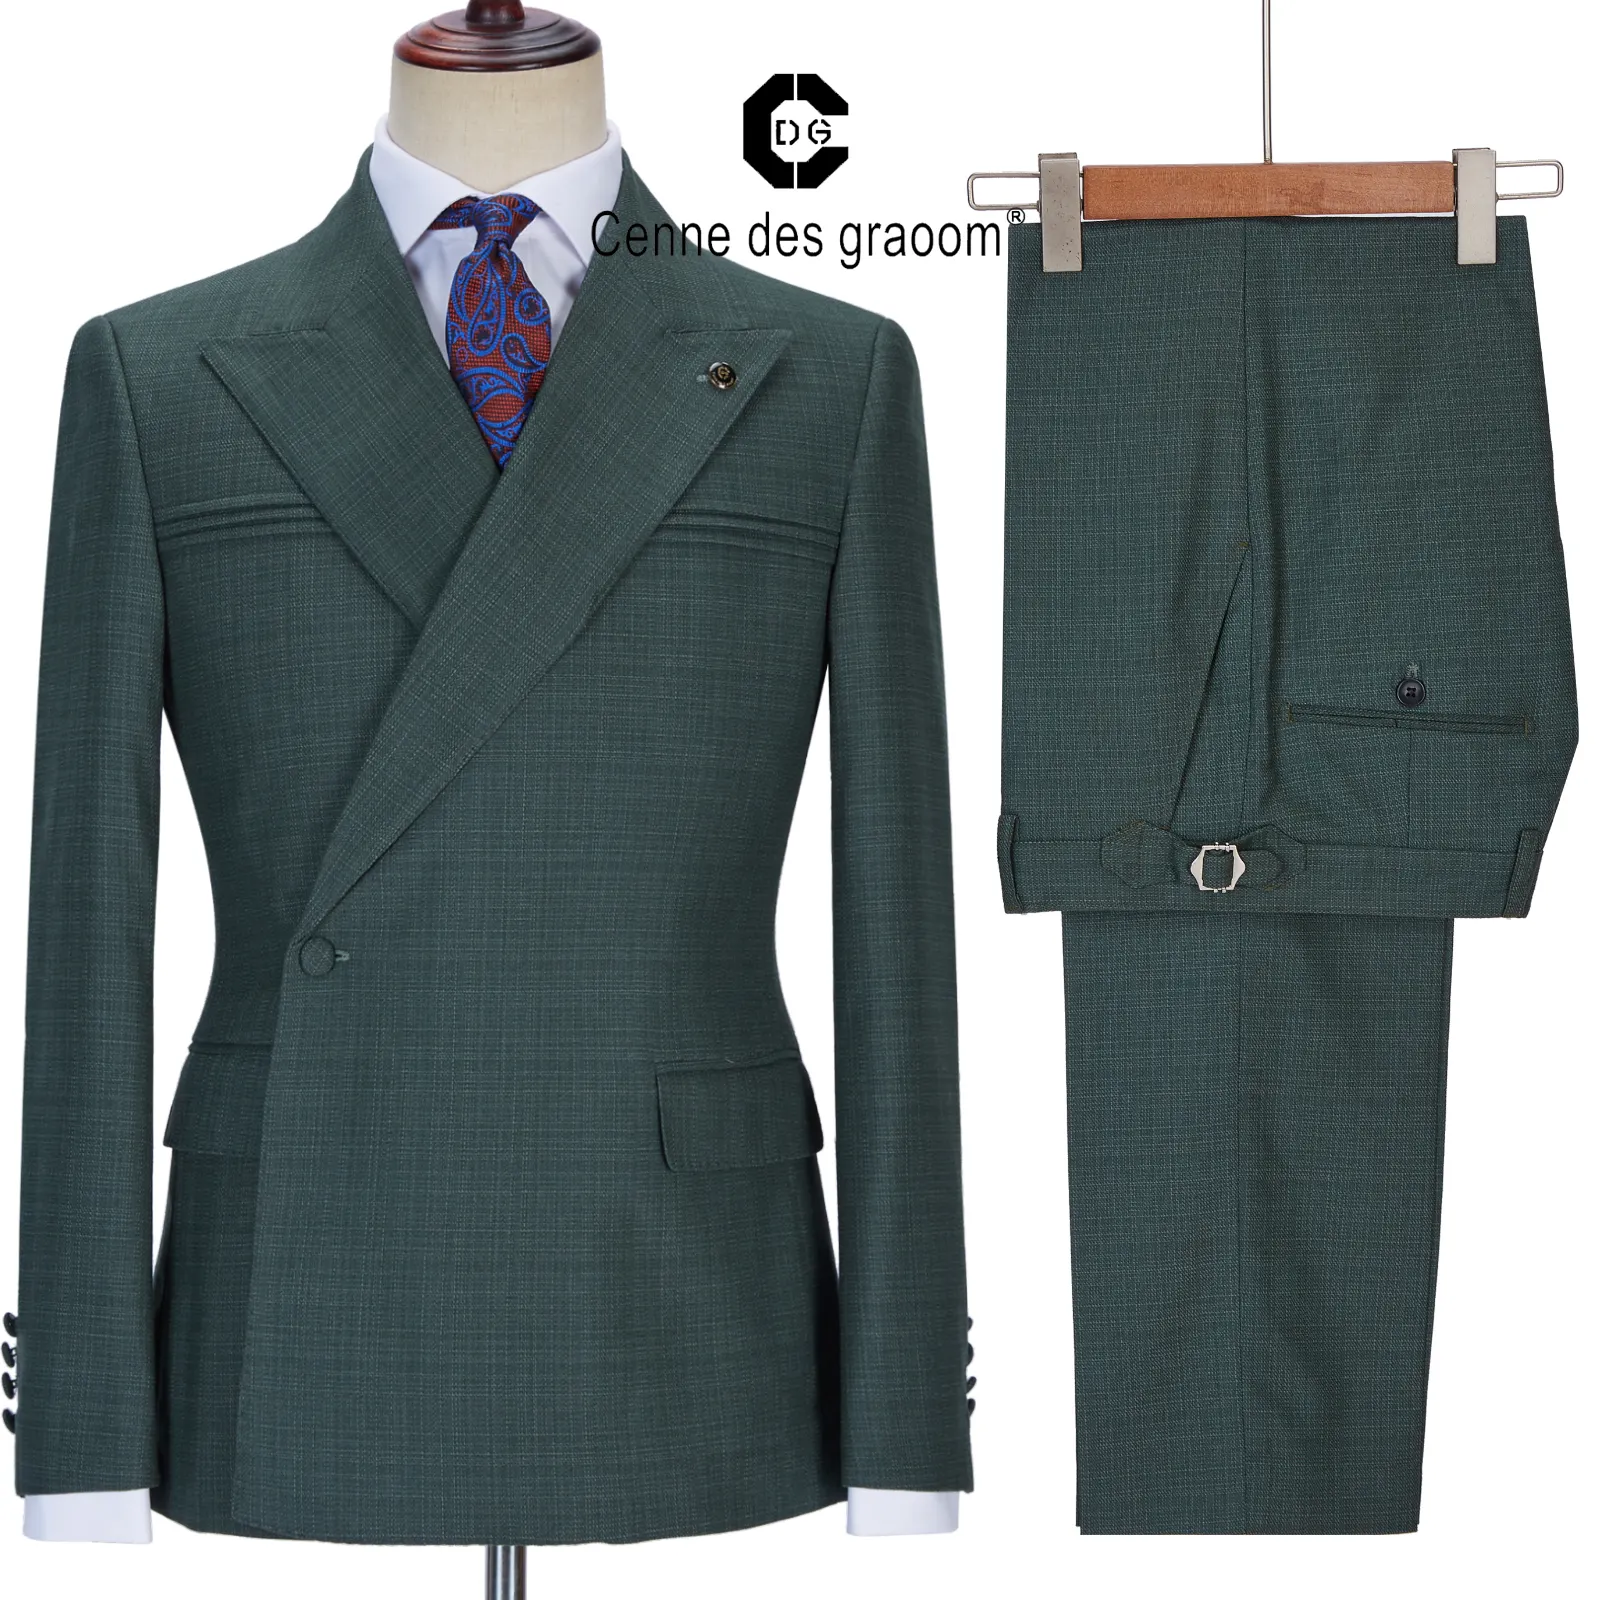 Cenne dos graoom terno masculino, um botão, verde, alfaiate, festa de casamento, terno masculino